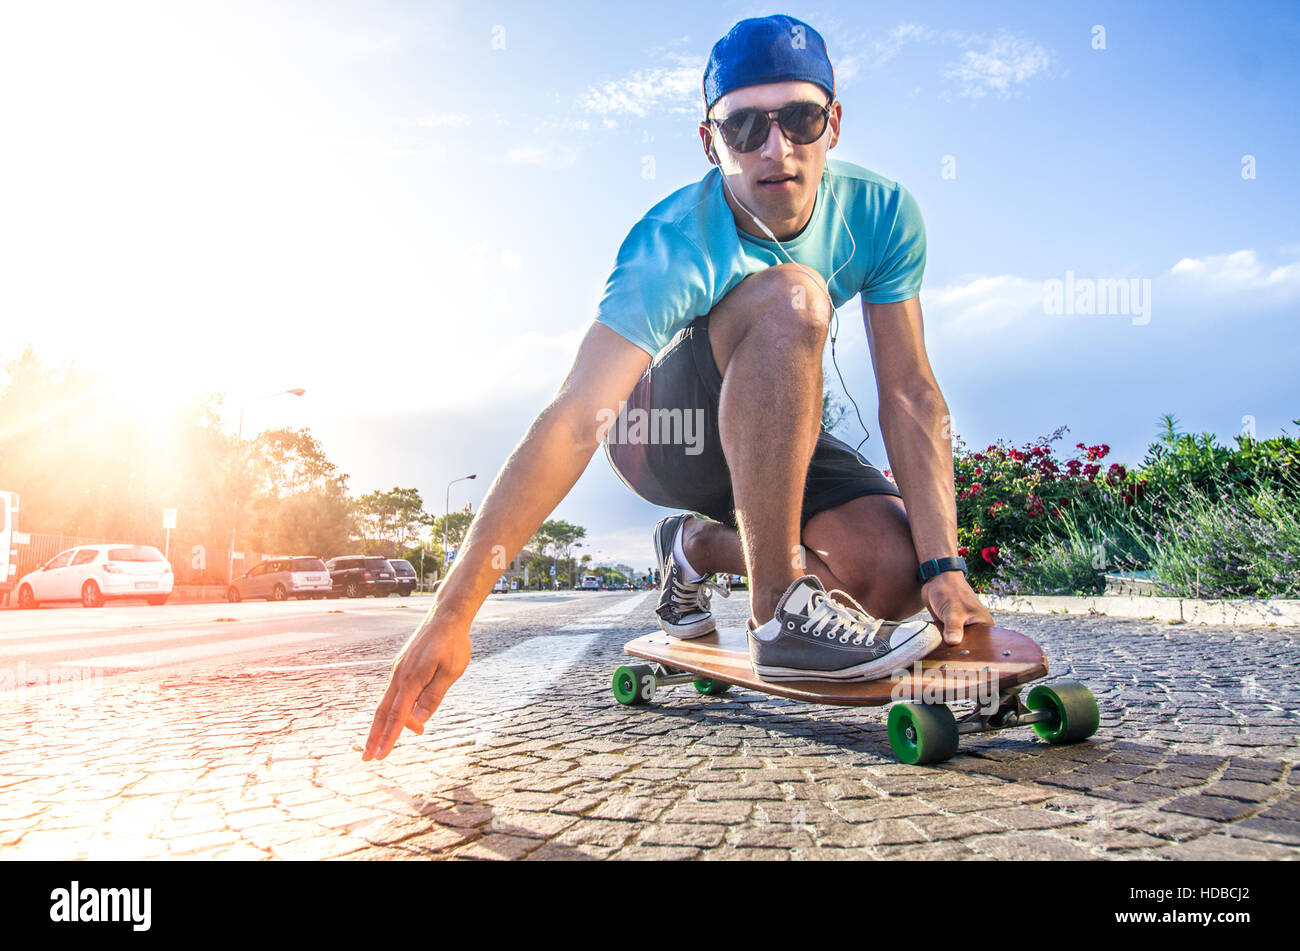 Patineur Cool faire un stunt sur son skateboard Photo Stock - Alamy